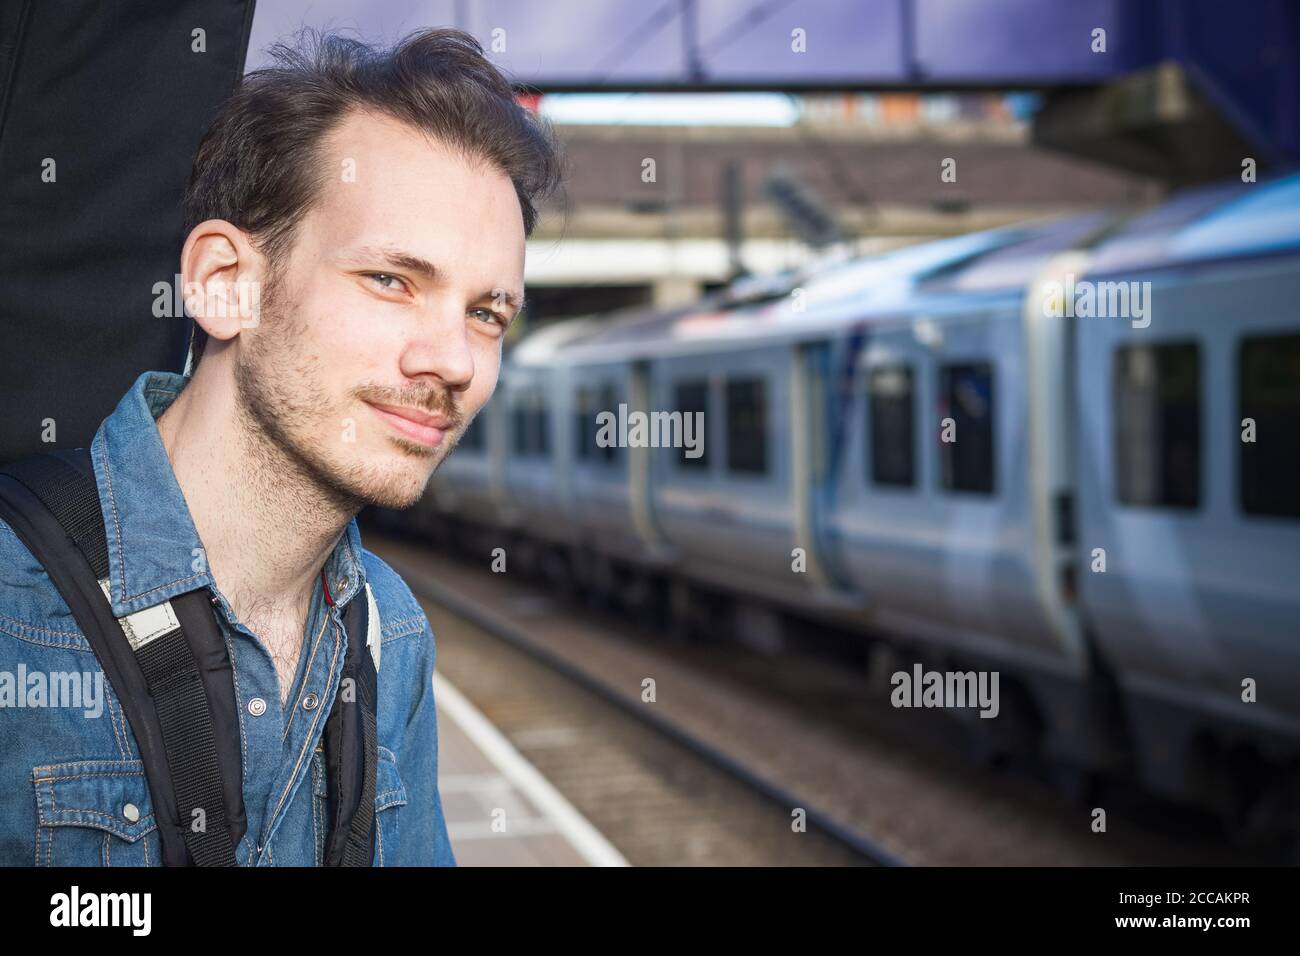 Portrait eines kaukasischen jungen Mannes, der auf den Zug wartet Plattform Stockfoto